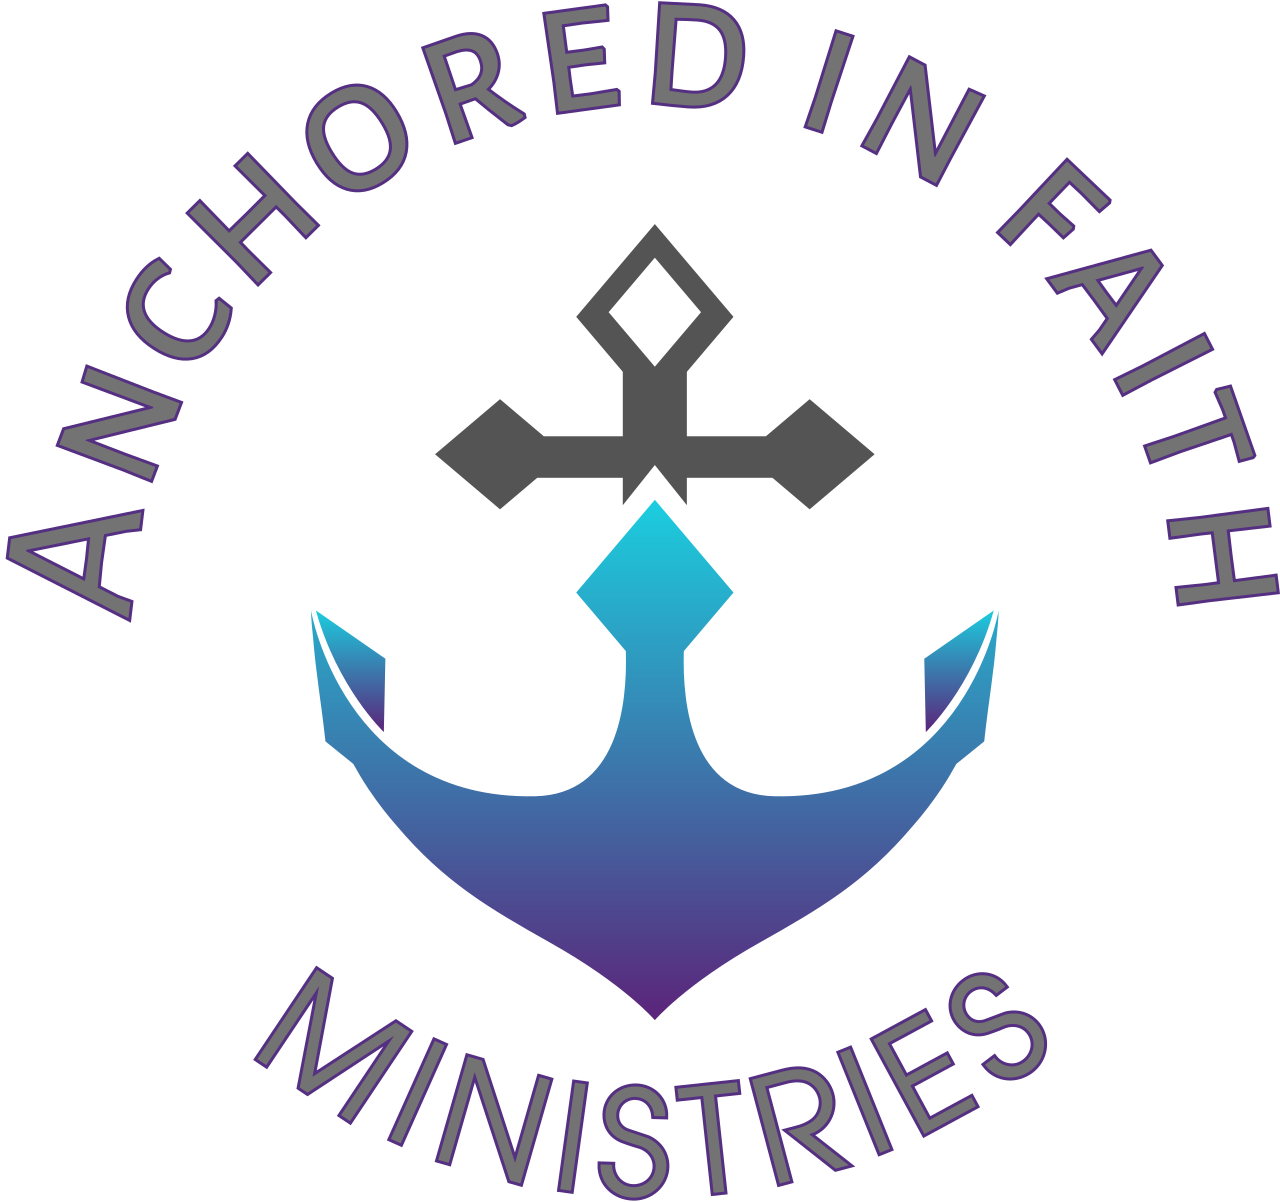 Anchored in faith's logo